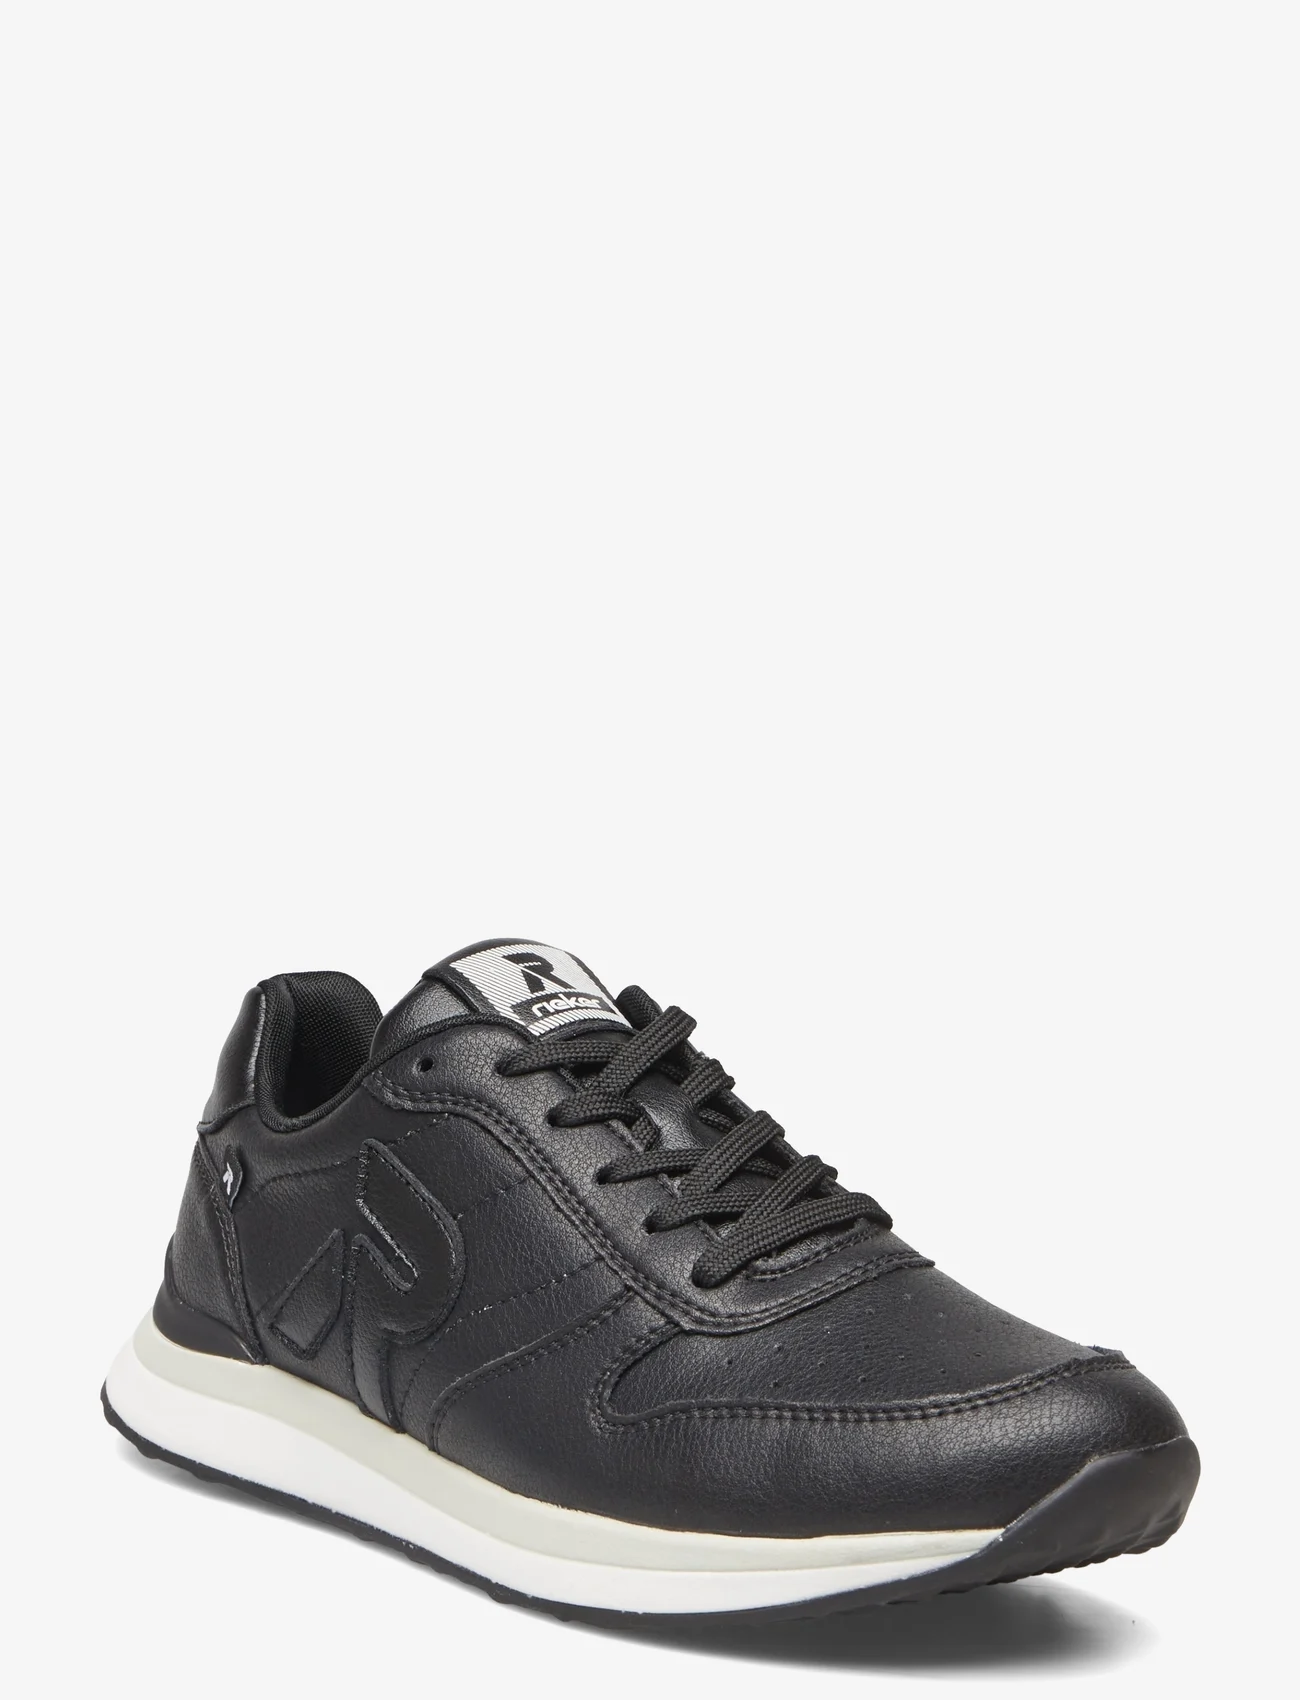 Rieker - 42501-00 - low top sneakers - black - 0